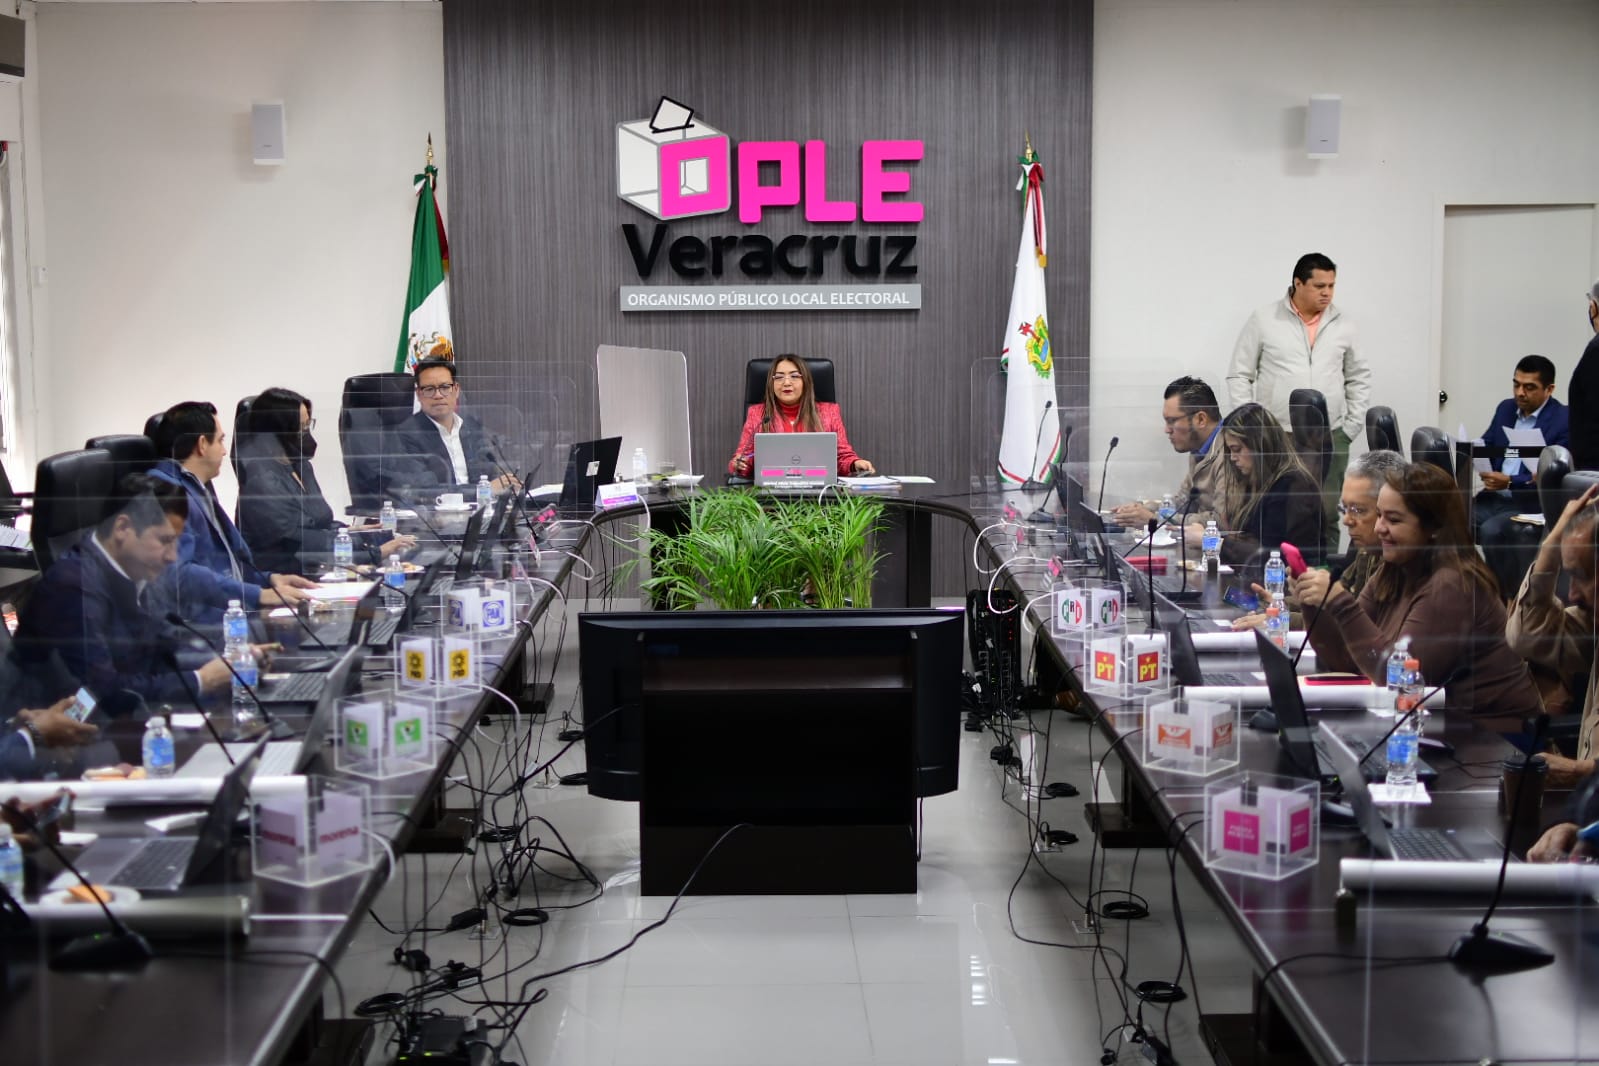 Por unanimidad, el Consejo General del OPLE Veracruz designa a Luis Fernando Reyes Rocha como Secretario Ejecutivo